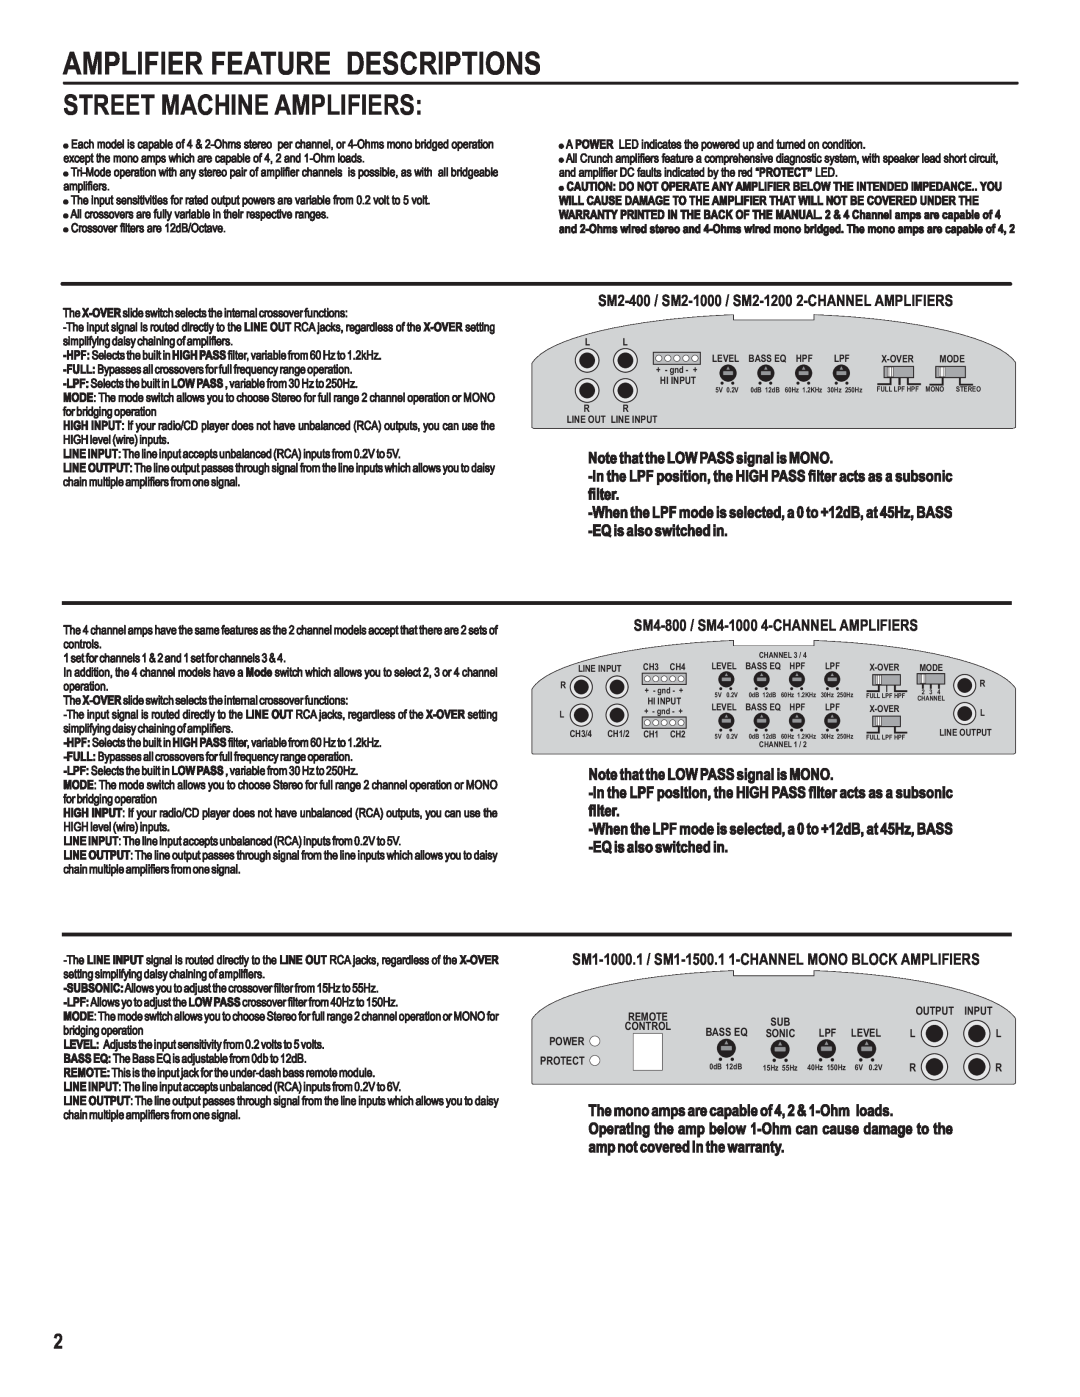 AutoTek SM2-400, SM4-800, SM2-1000, SM2-1200, SM4-1000, SM1-150.1 Amplifier Feature Descriptions, Street Machine Amplifiers 